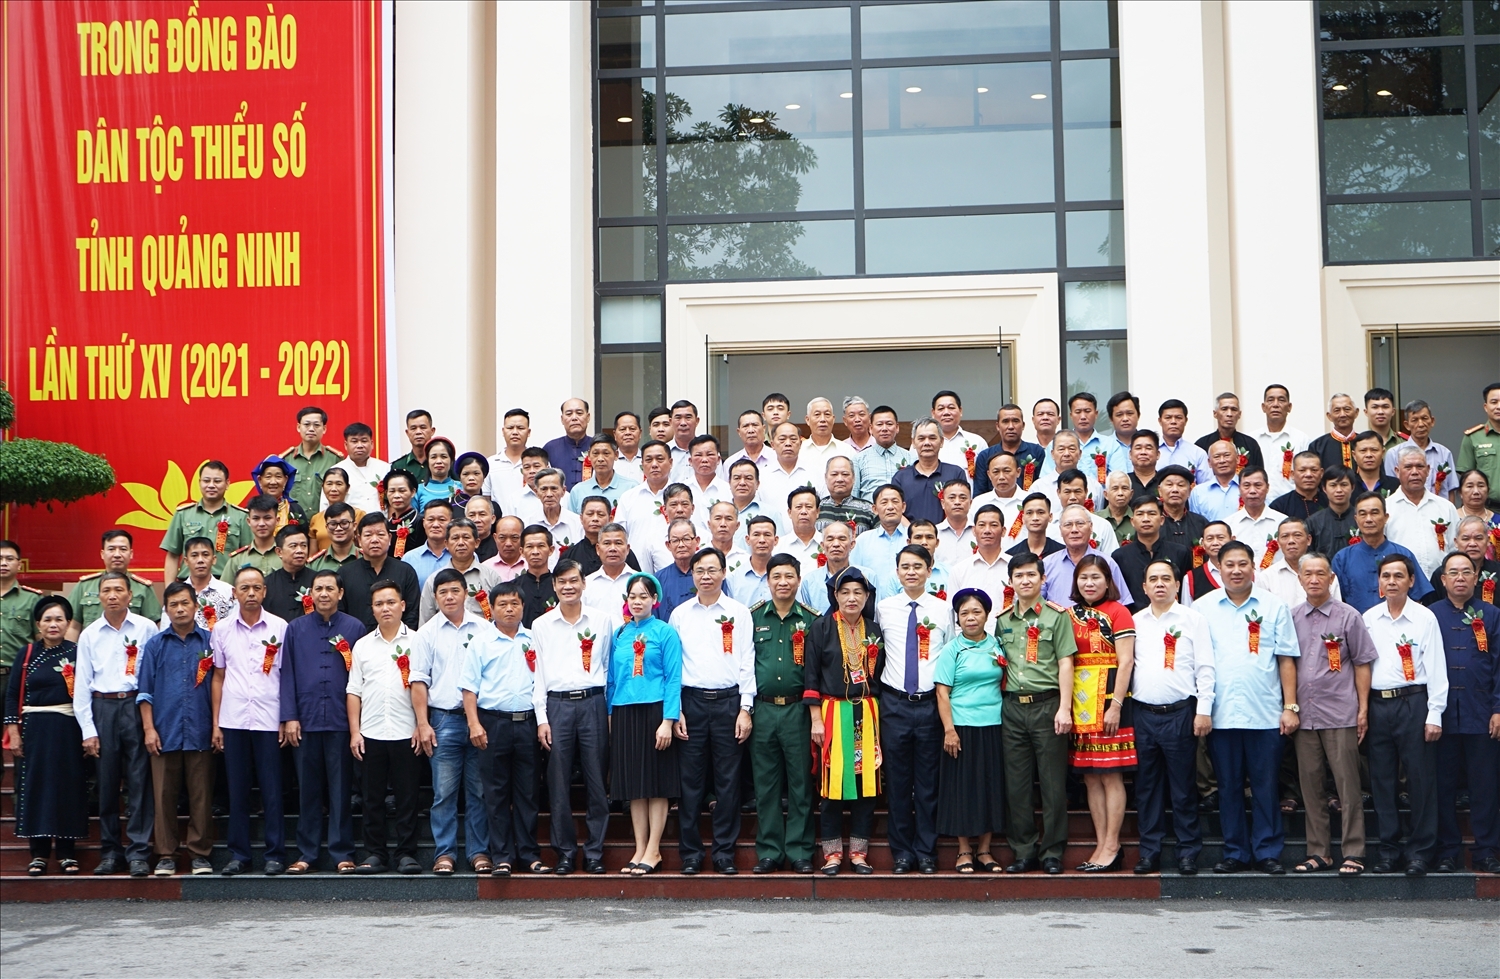 Lãnh đạo Trung ương, lãnh đạo tỉnh Quảng Ninh chụp ảnh lưu niệm cùng đại biểu Người có uy tín tại Hội nghị biểu dương Người có uy tín tiêu biểu trong đồng bào DTTS tỉnh Quảng Ninh lần thứ XV (2021 - 2022)